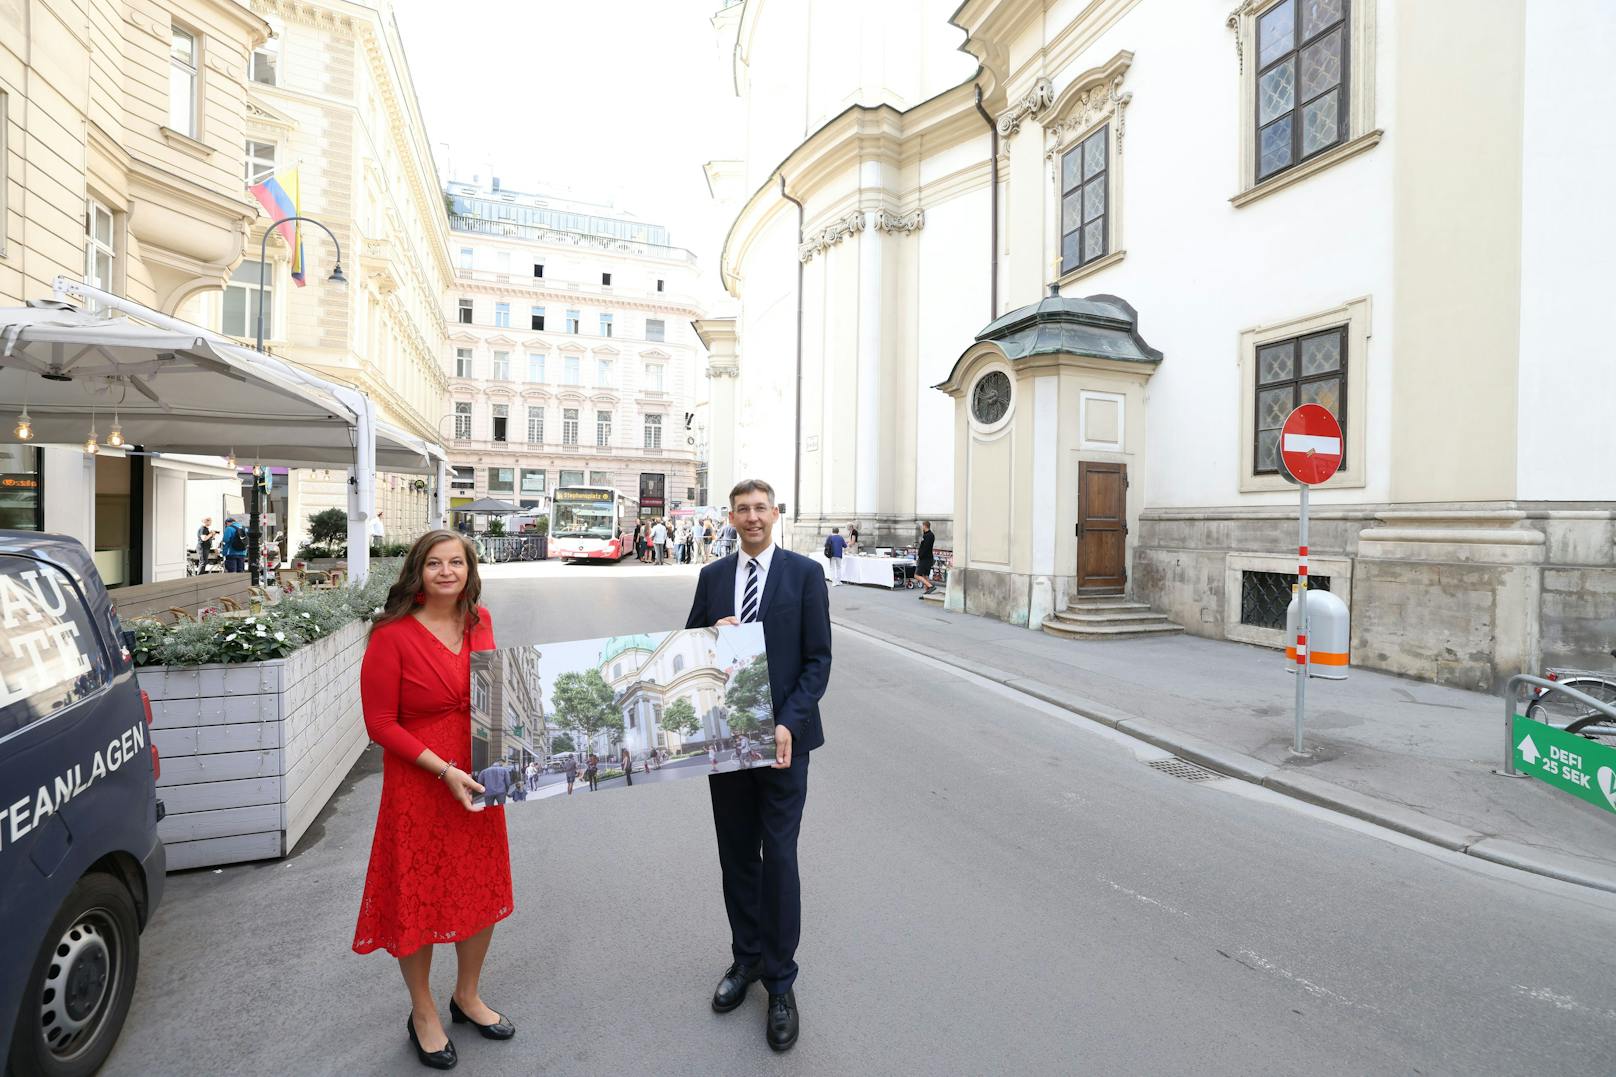 Bis Herbst 2022 wird der Platz umgestaltet. Vor der Peterskirche entsteht eine Begegnungszone. Die Pläne wurden heute von Planungsstadträtin Ulli Sima (SPÖ) und Bezirkschef Markus Figl (ÖVP) vorgestellt.